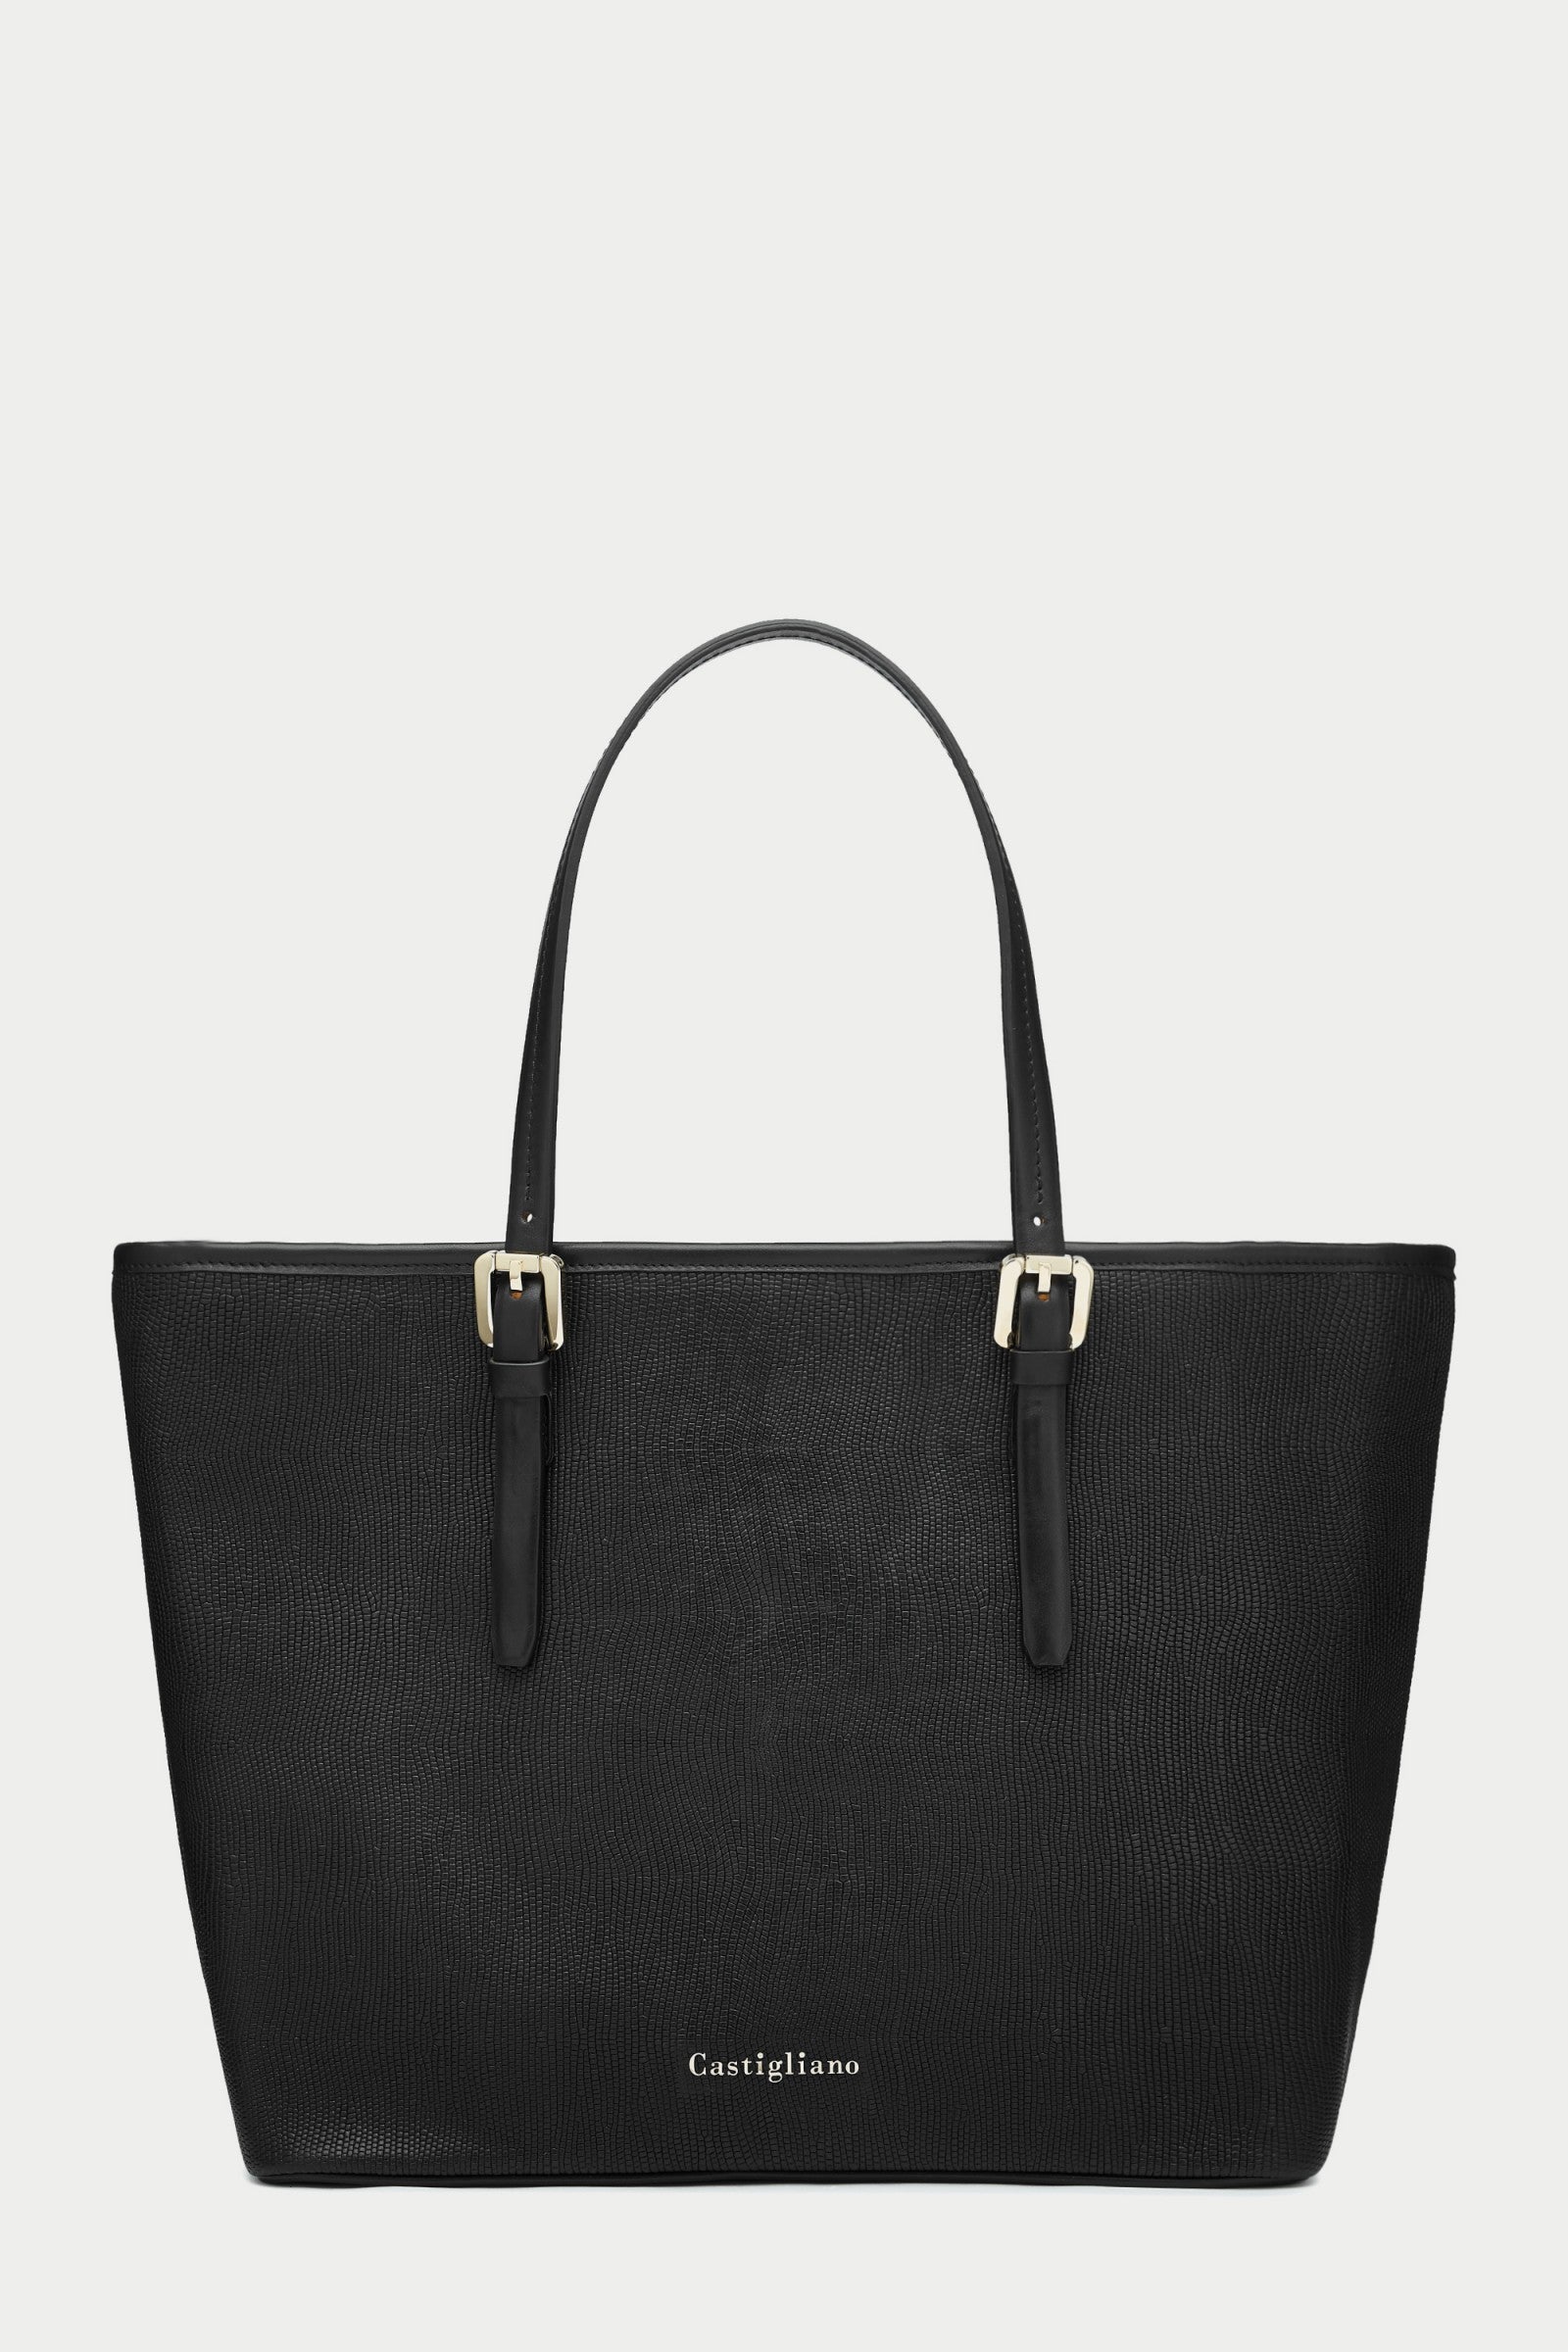 black leather handbags on sale